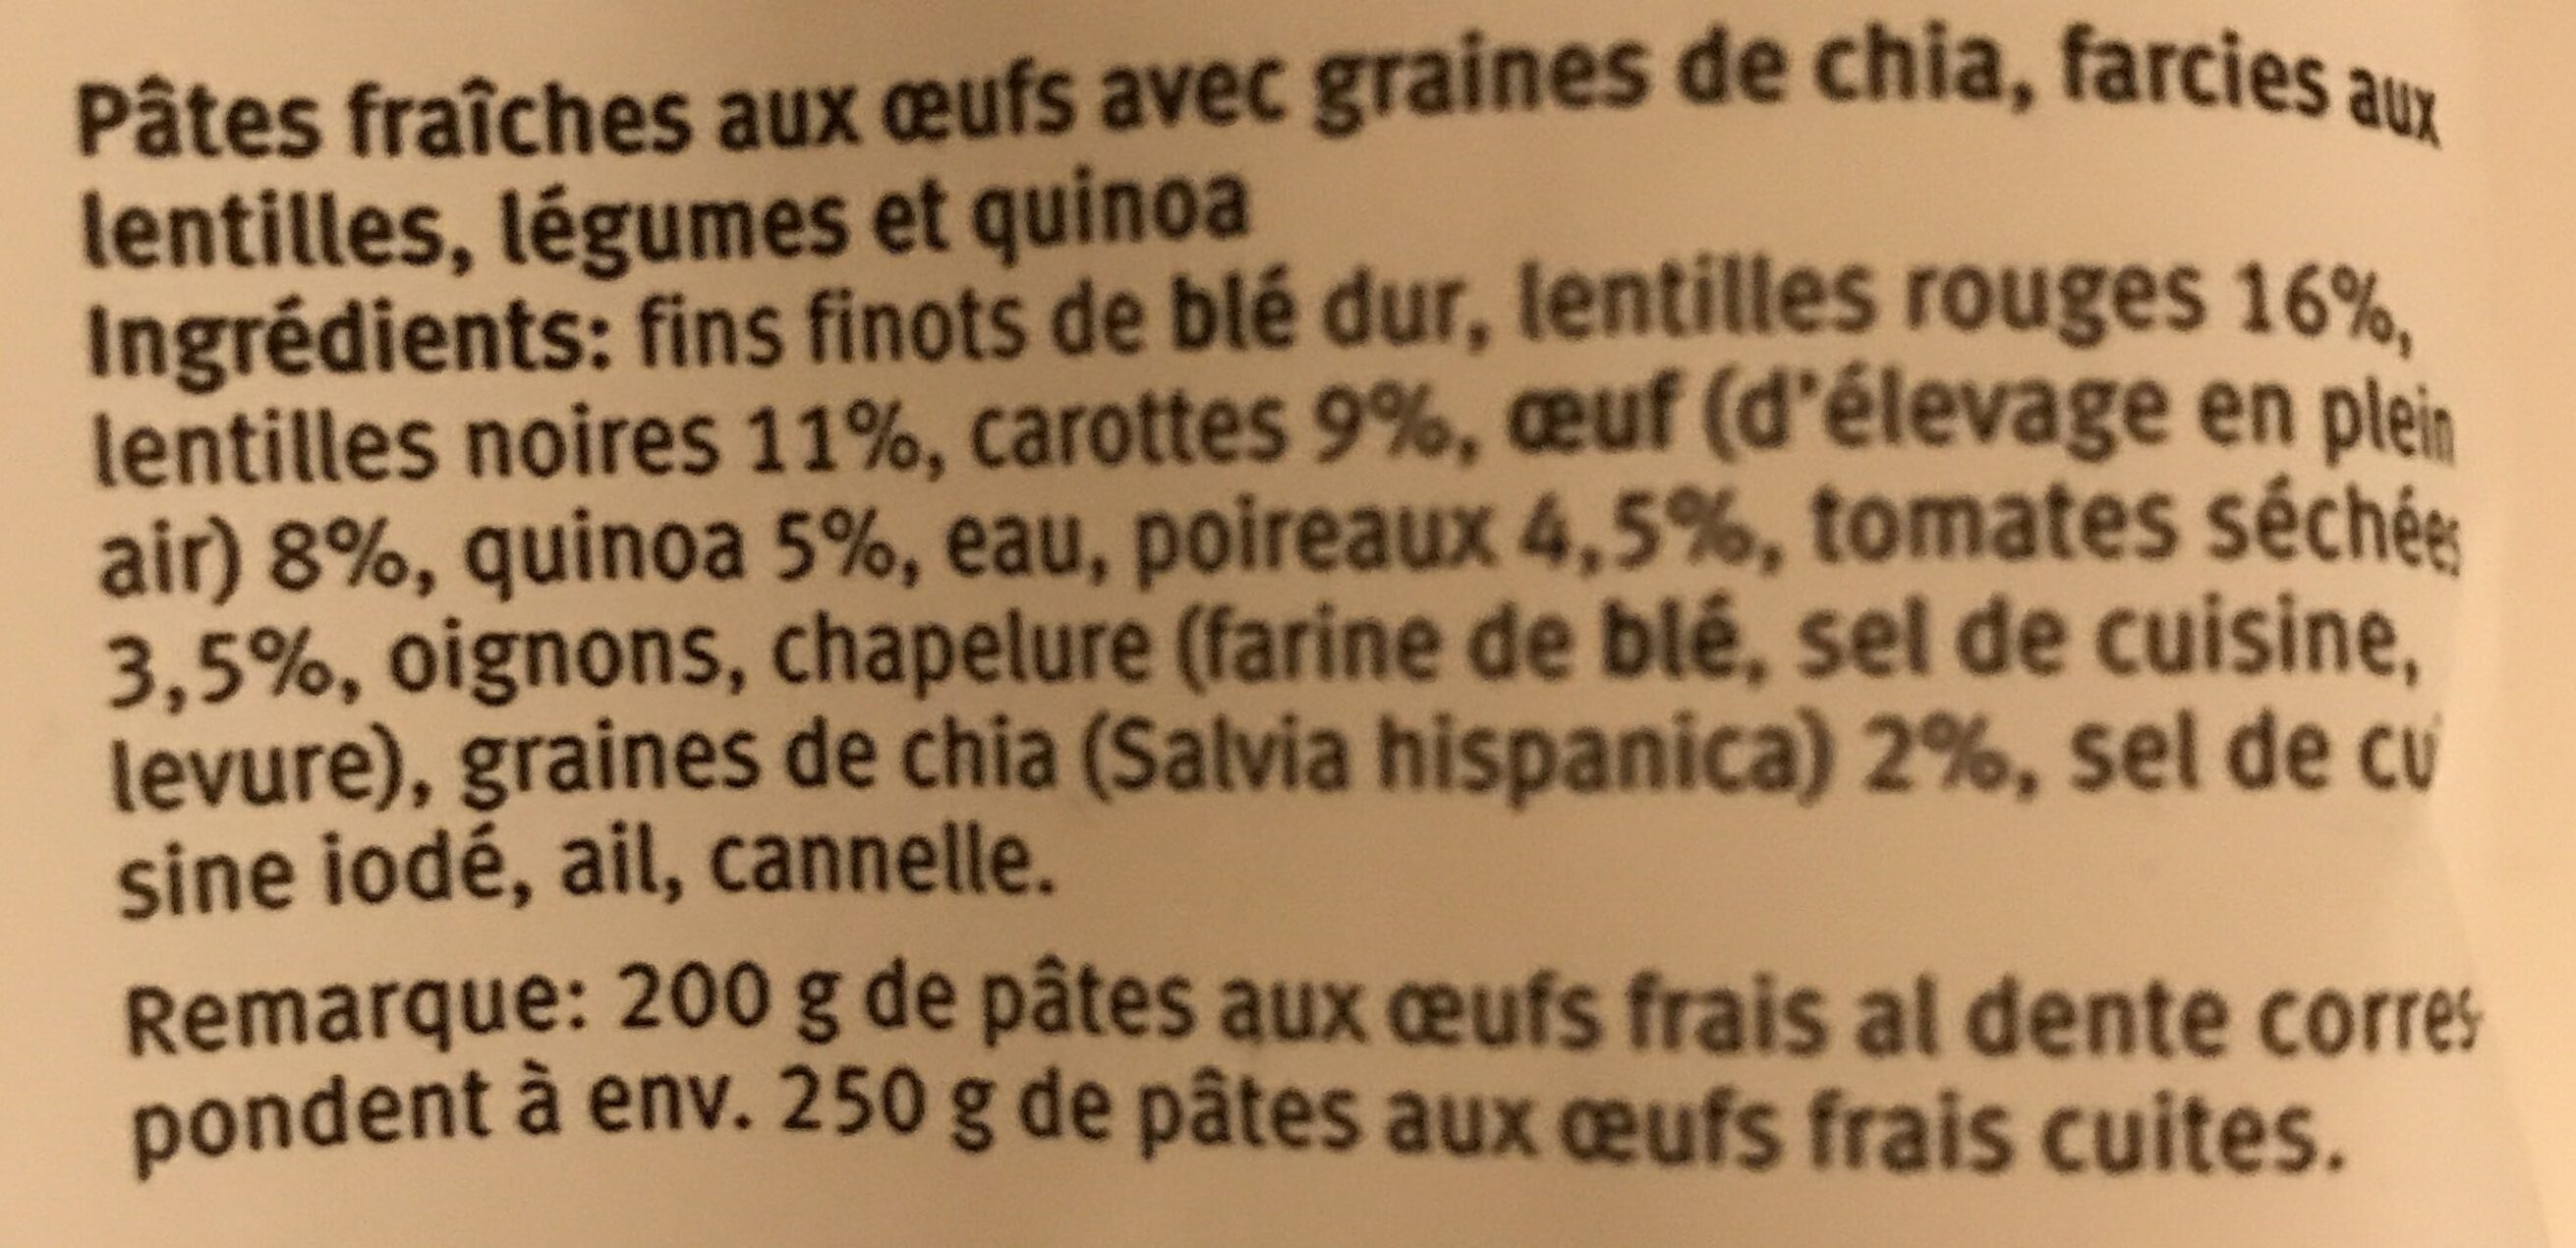 Fiori lentilles et quinoa - Ingredienti - fr